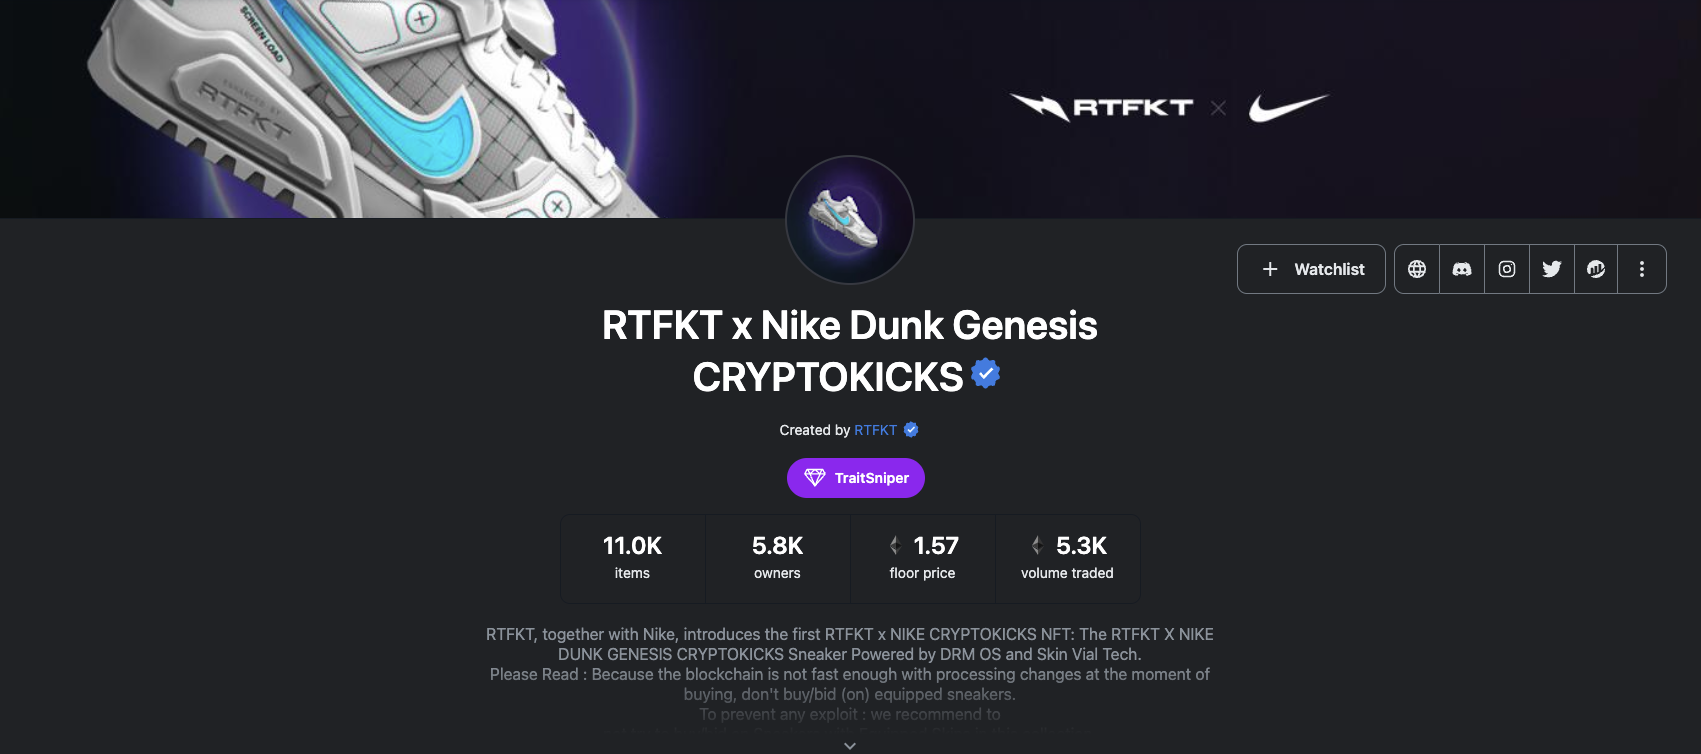 https://opensea.io/collection/rtfkt-nike-cryptokicks